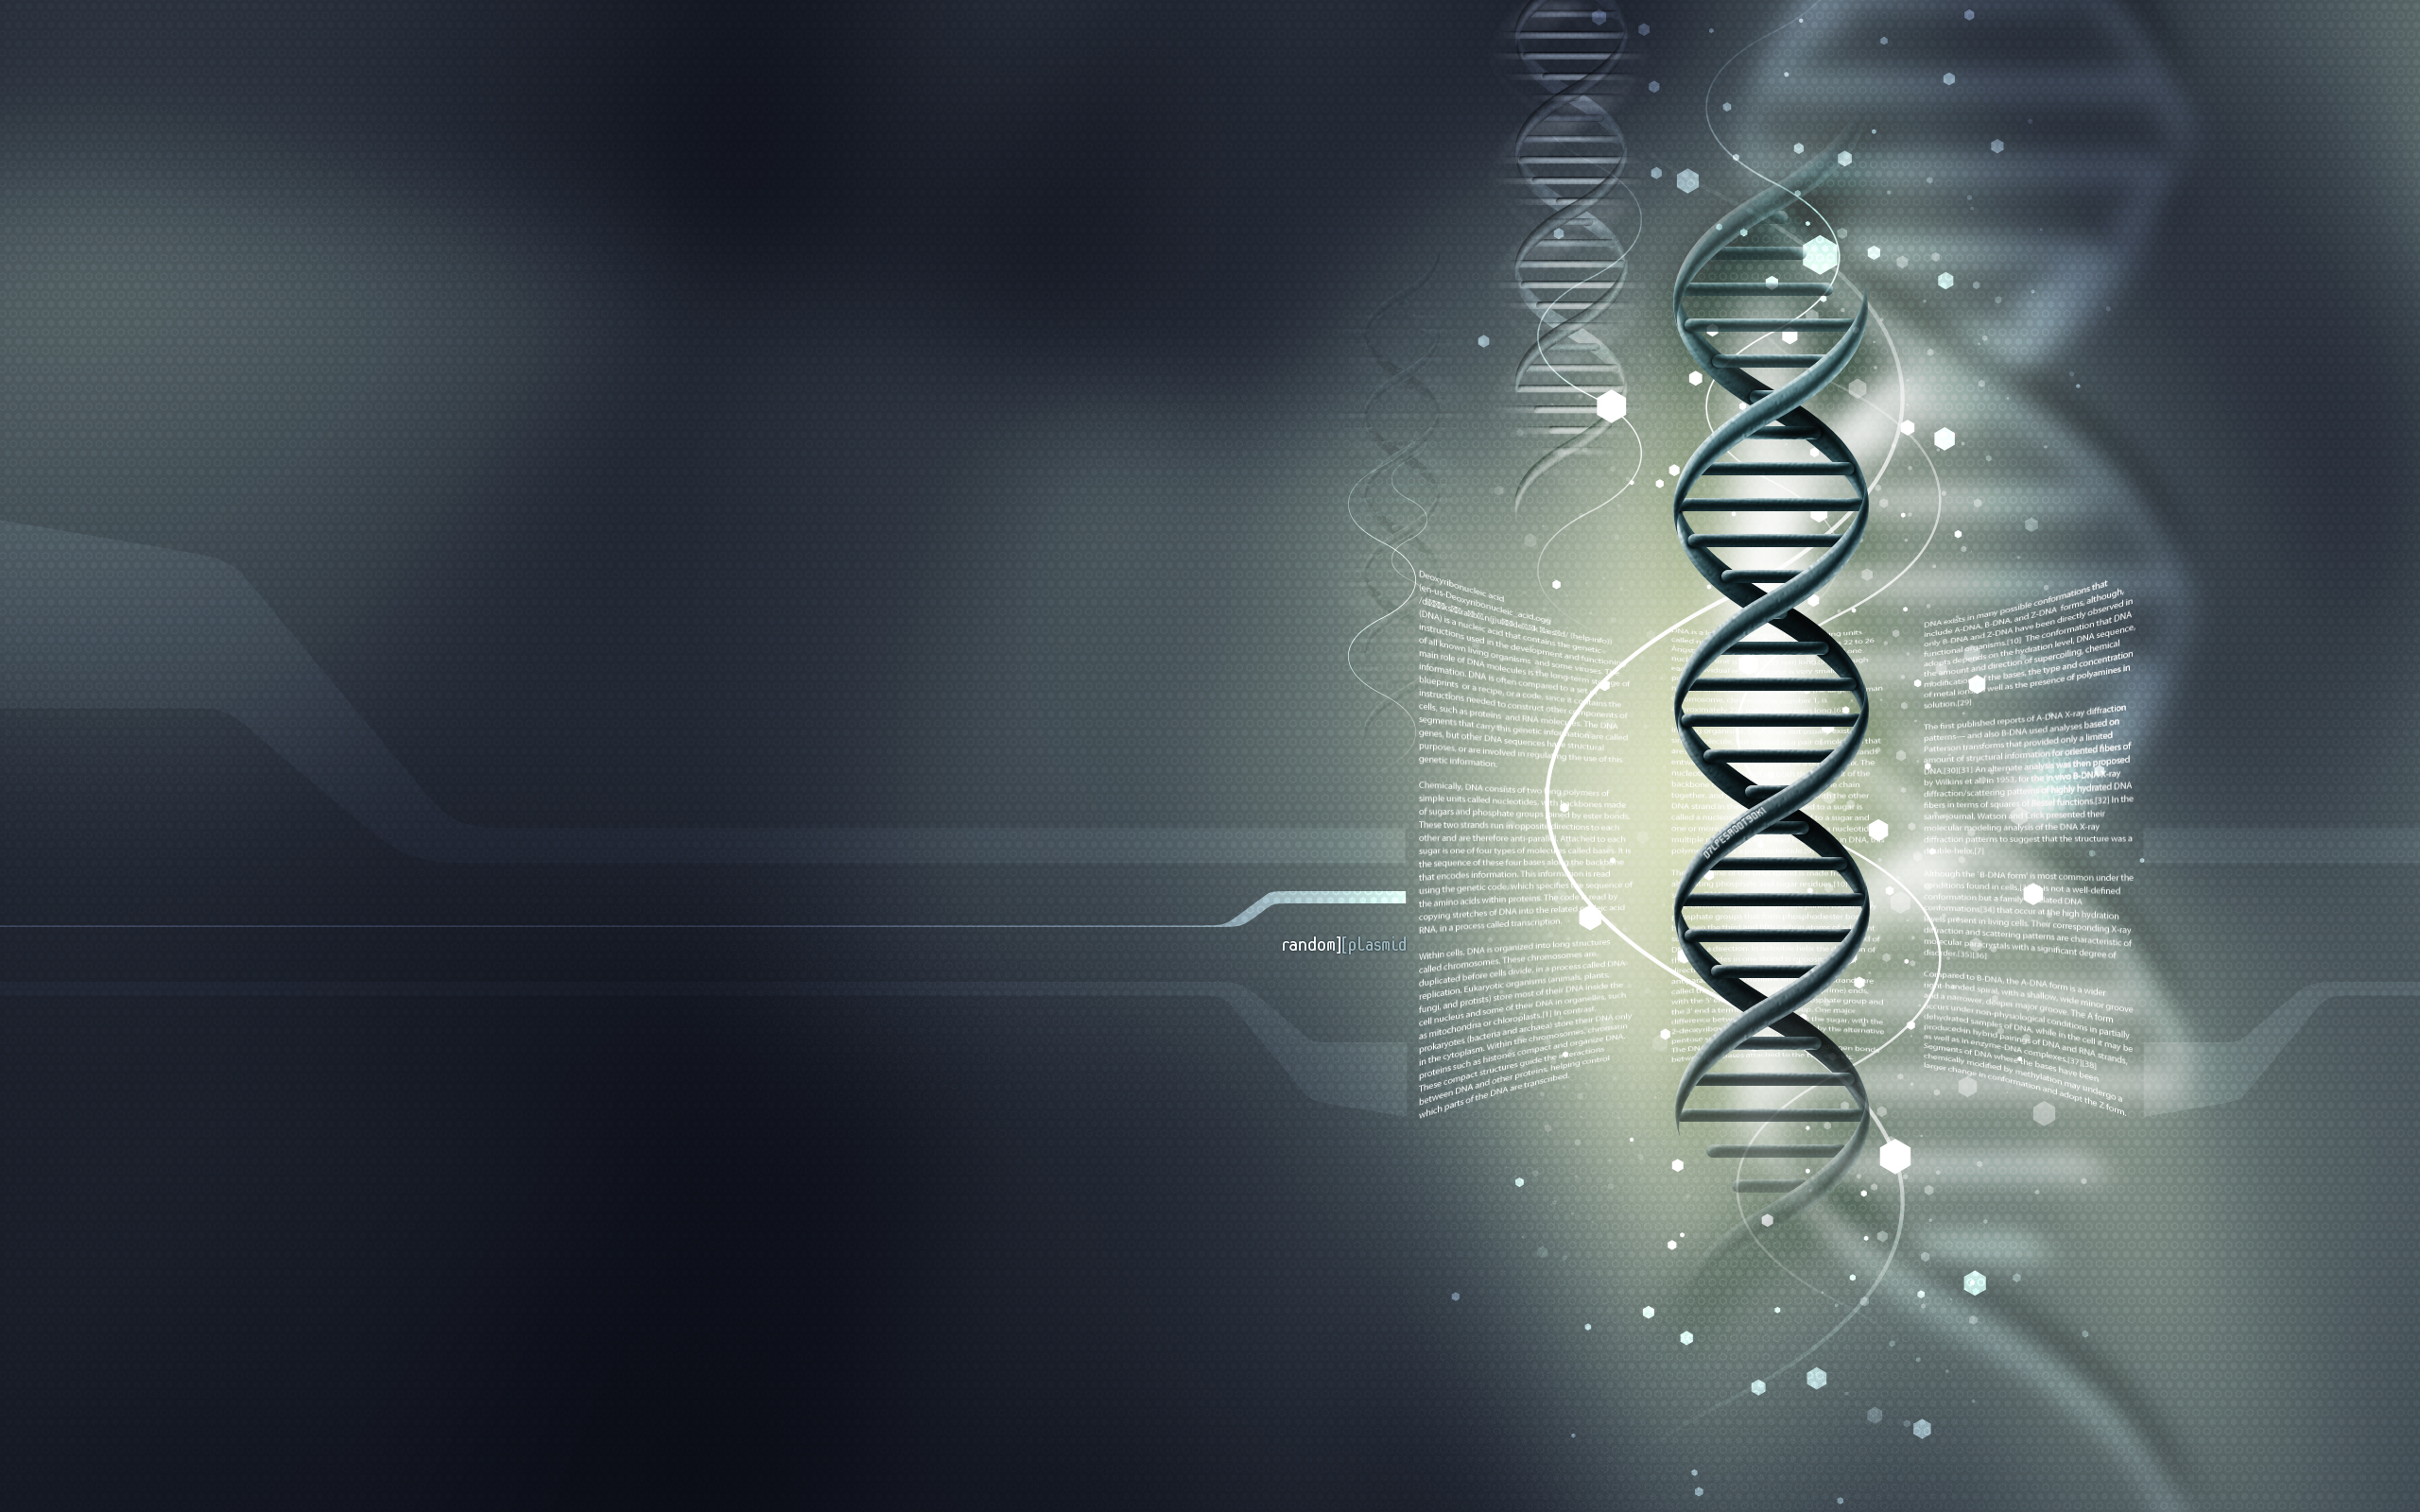 DNA - desktop wallpaper